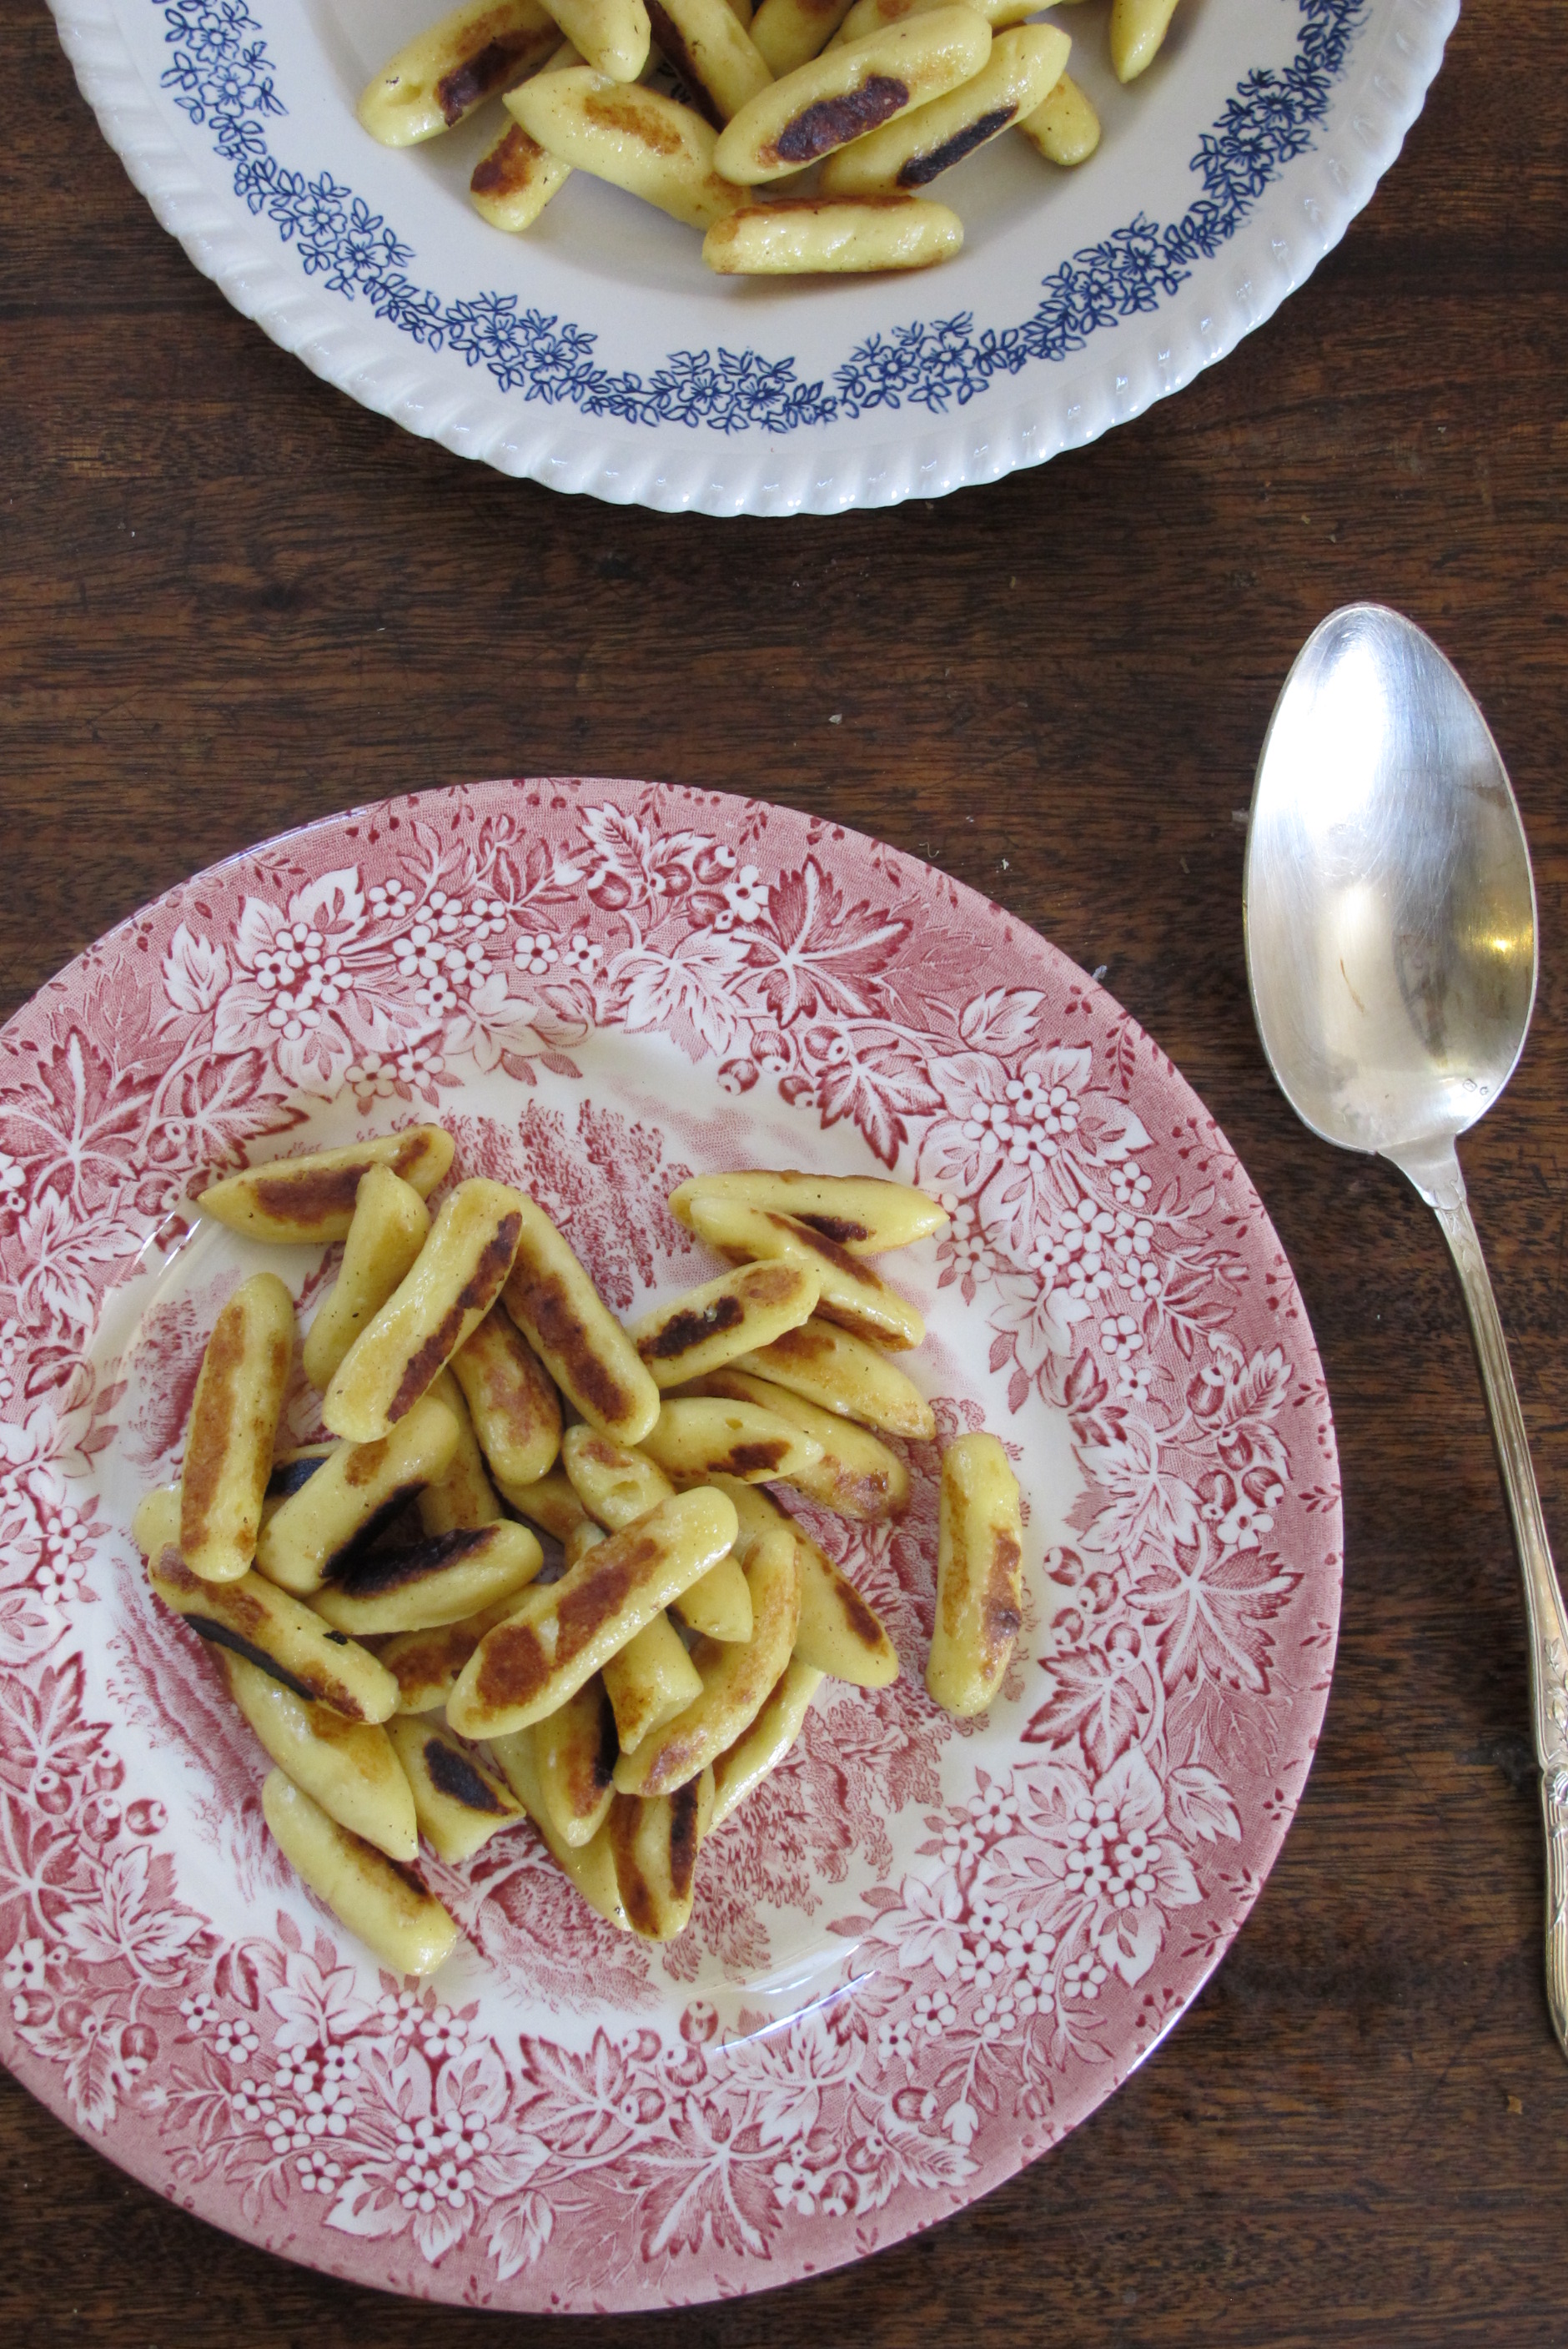 馬鈴薯麵疙瘩佐香蔥櫛瓜核桃橄欖油醬